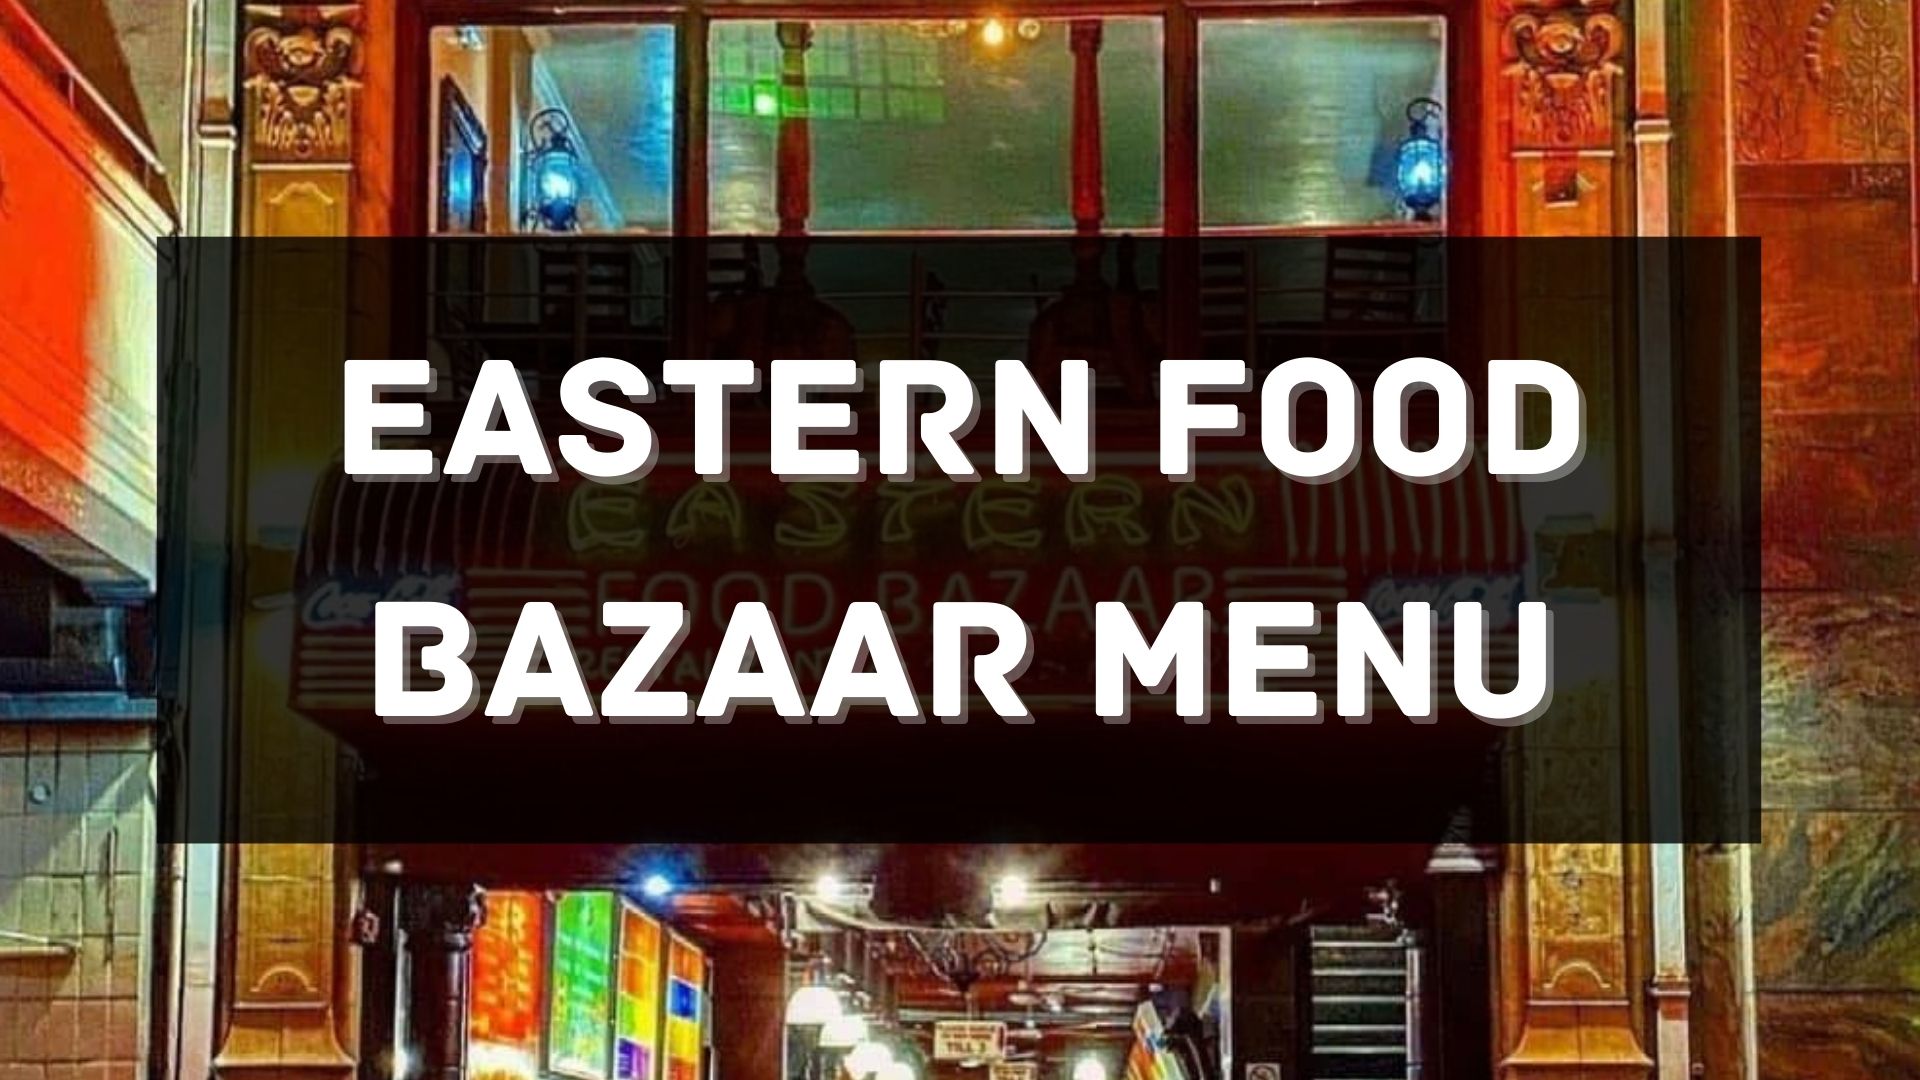 Eastern Food Bazaar Menu South Africa